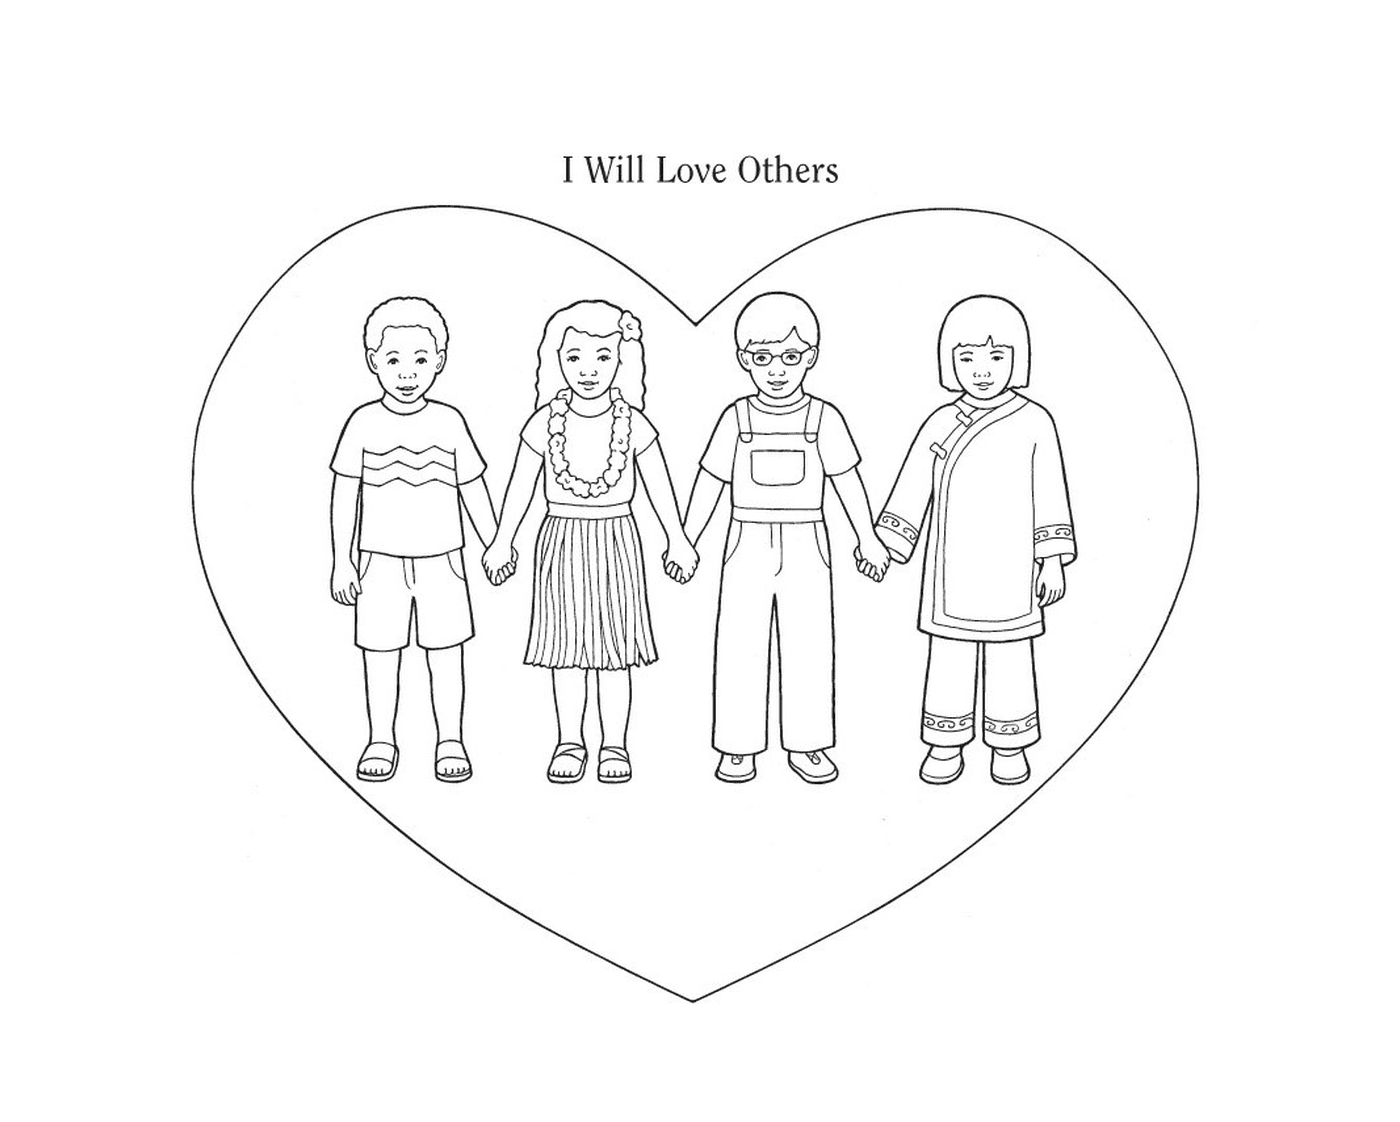  Cuatro niños tomados de la mano delante de un corazón 